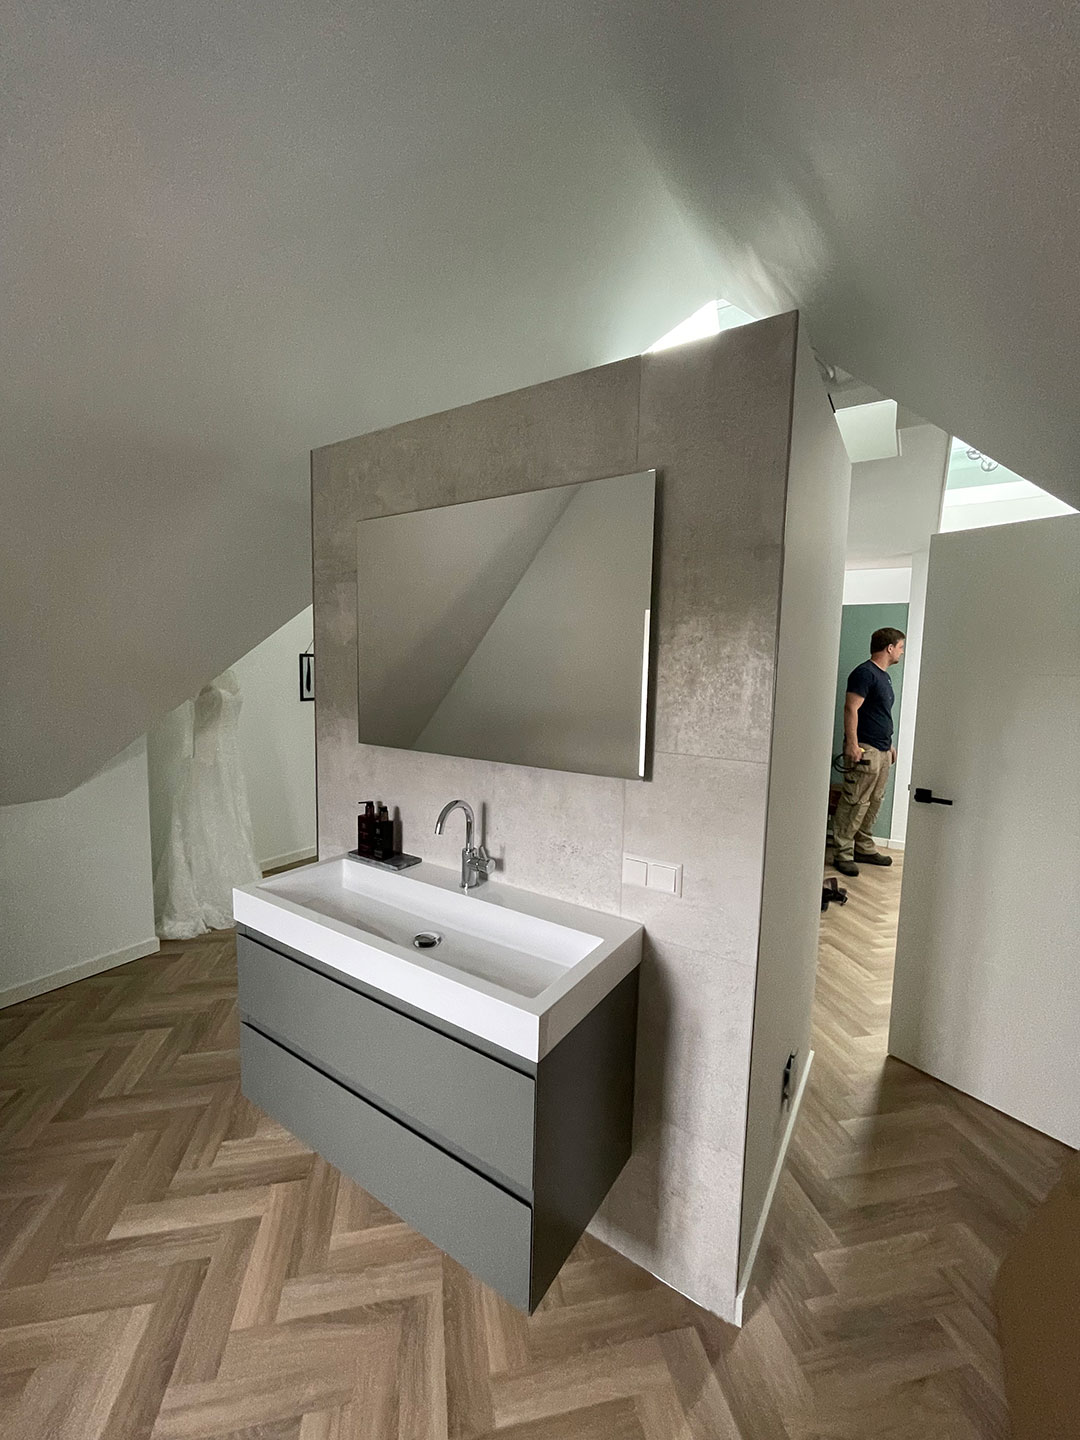 zolder verbouwing - slaapkamer met badkamer